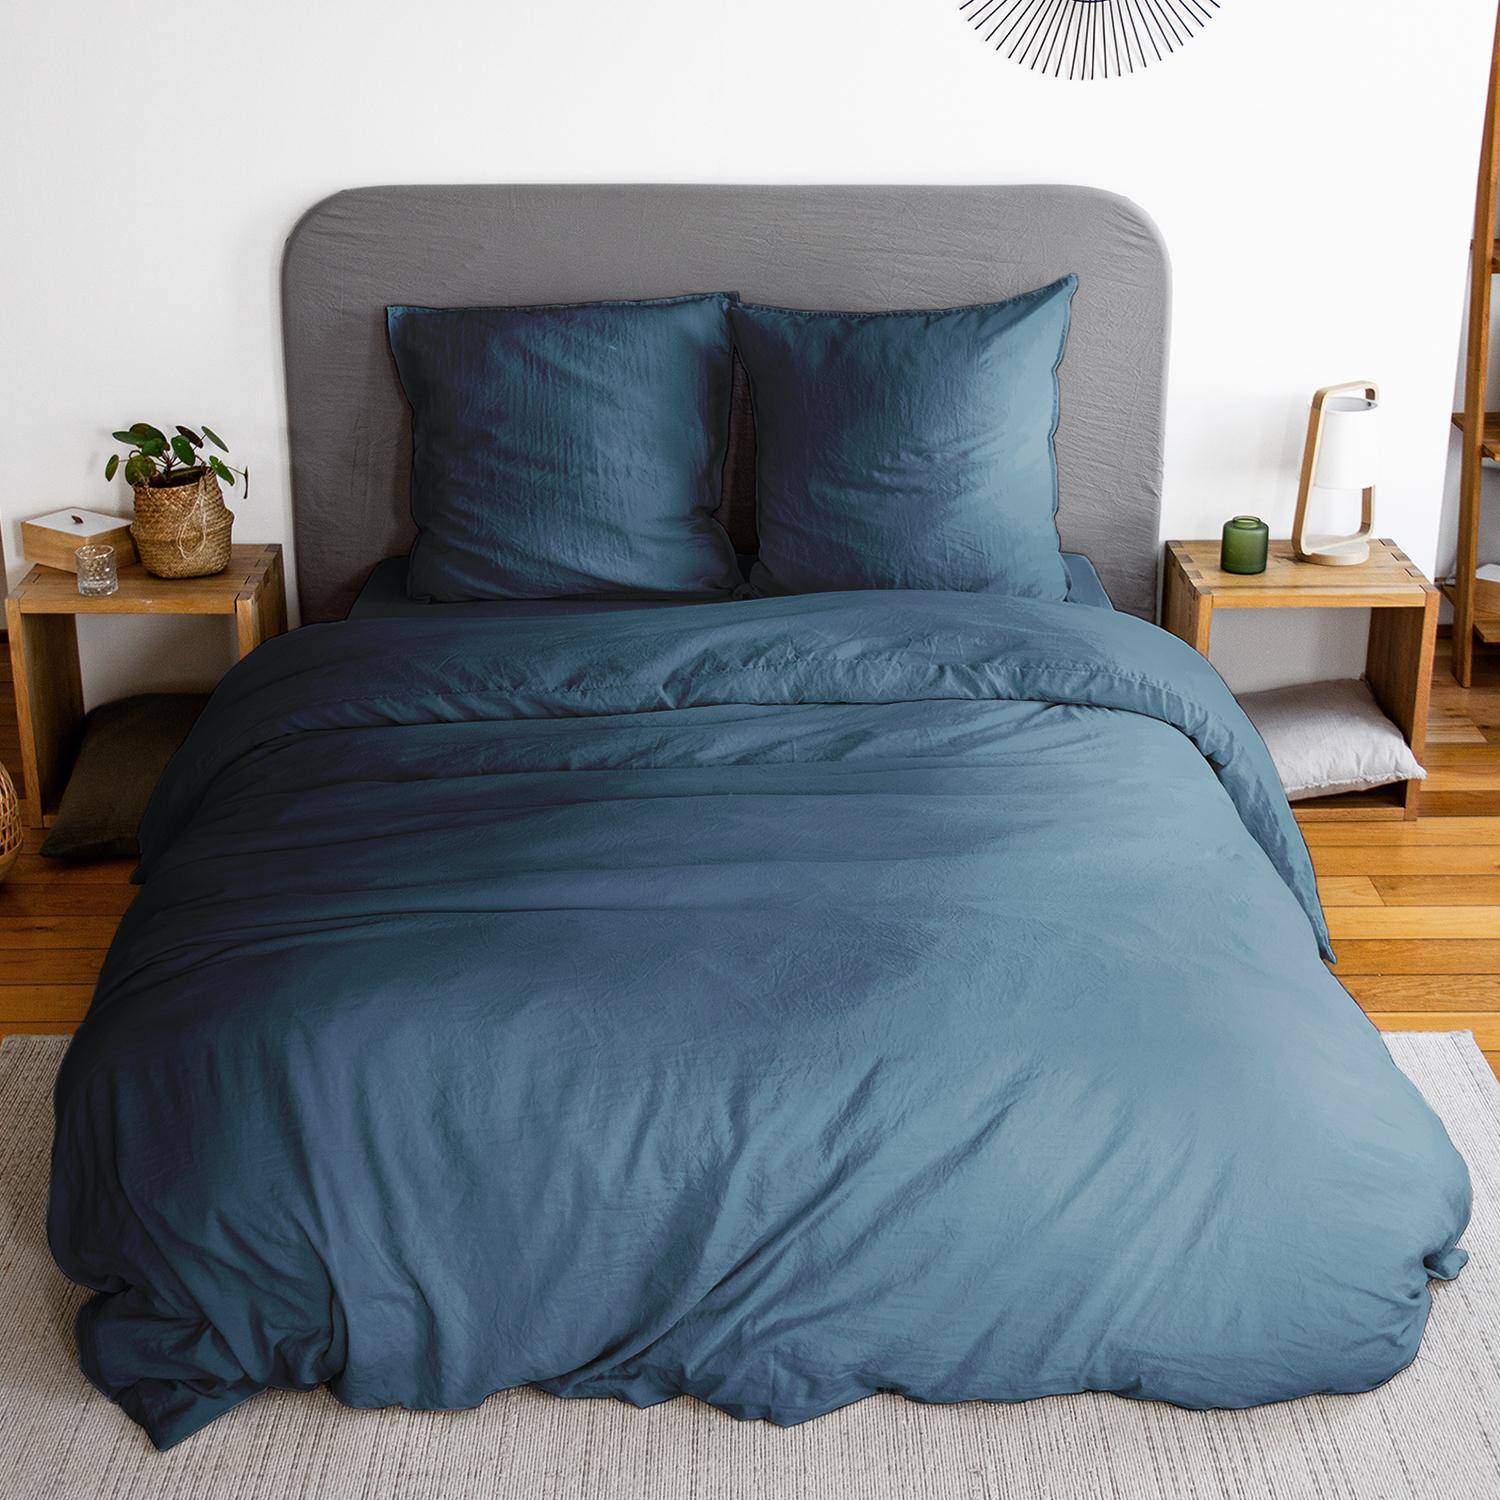 Bettwäsche-Set aus vorgewaschener Mikrofaser in nachtblau 260 x 240 cm für Doppelbetten, 1 Bettbezug und 2 Kissenbezüge,sweeek,Photo1